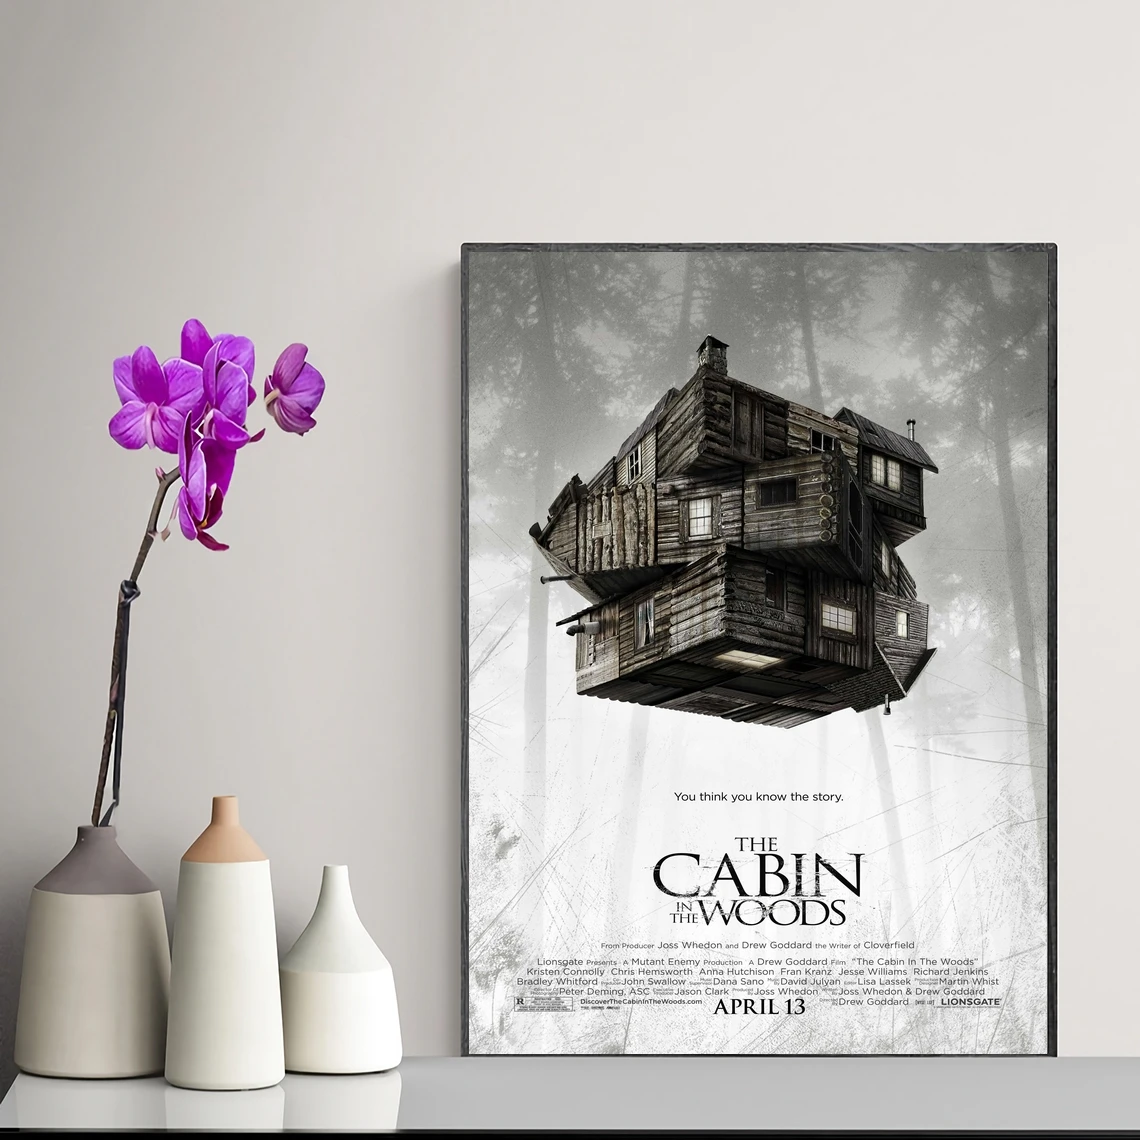 

Постер из фильма «домик в лесу», Художественная печать, классический фильм, популярный постер на холсте, украшение для дома, настенная живопись, без рамки